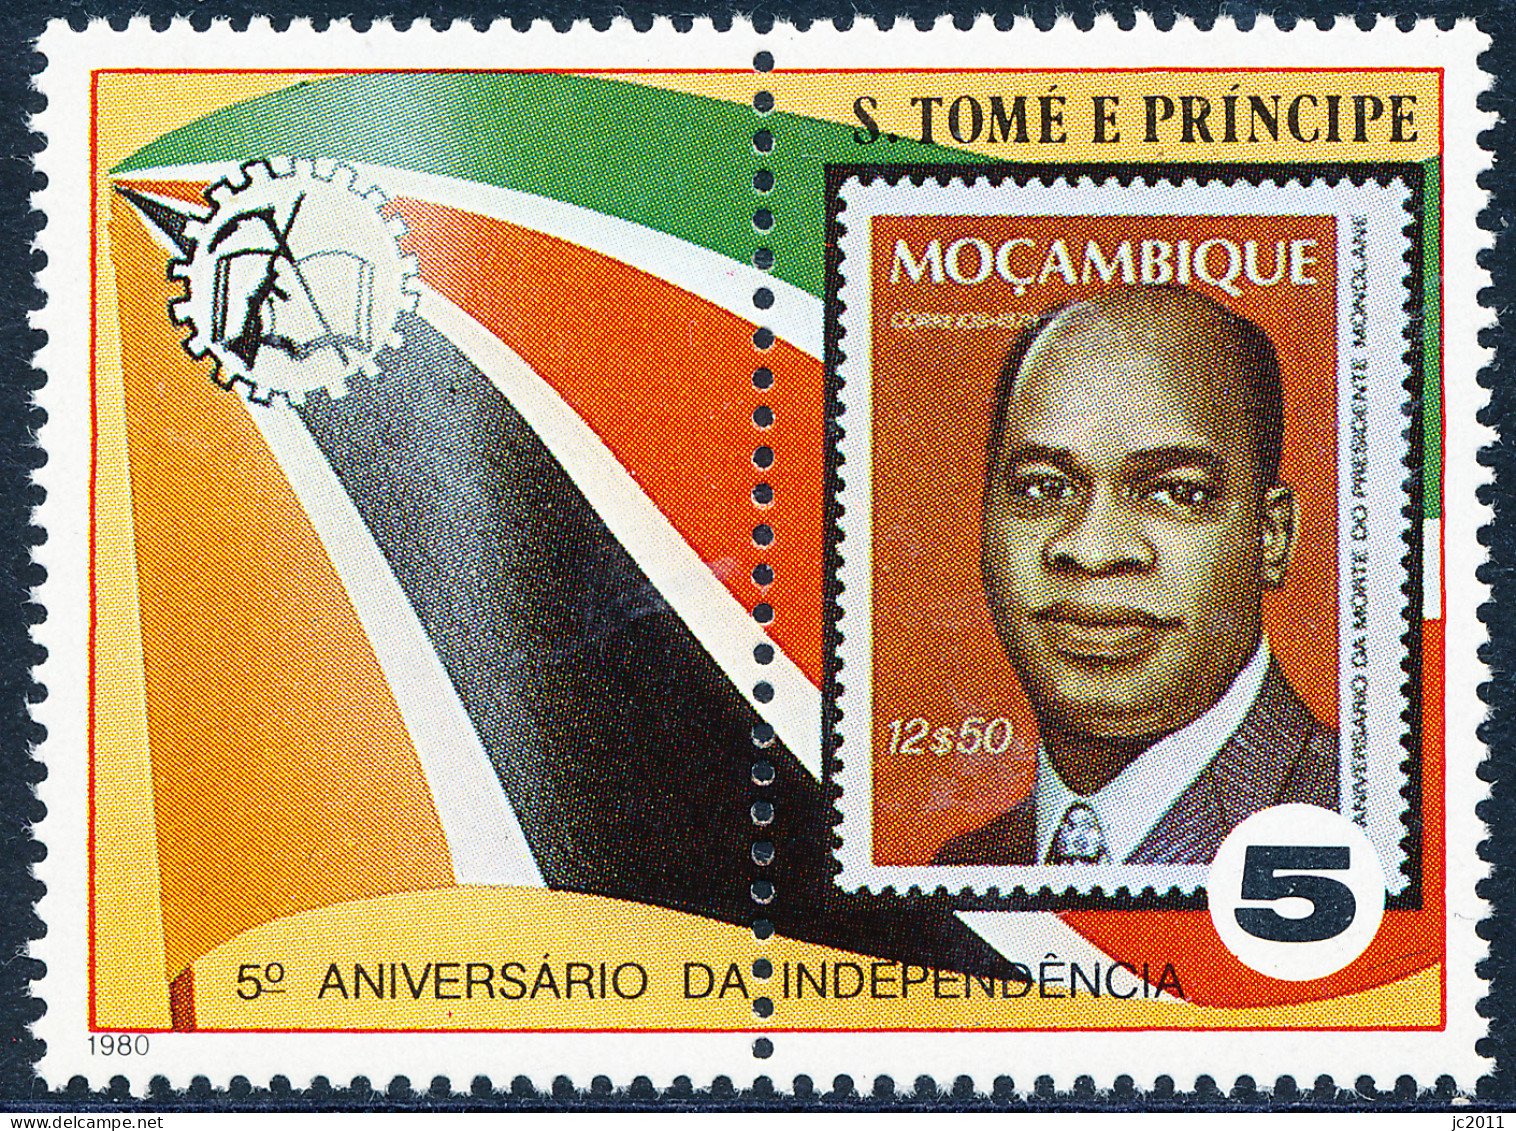 S Tomé E Príncipe - 1980 - Independence - Mozambique / Flag + Mondlane - MNH - Sao Tome Et Principe